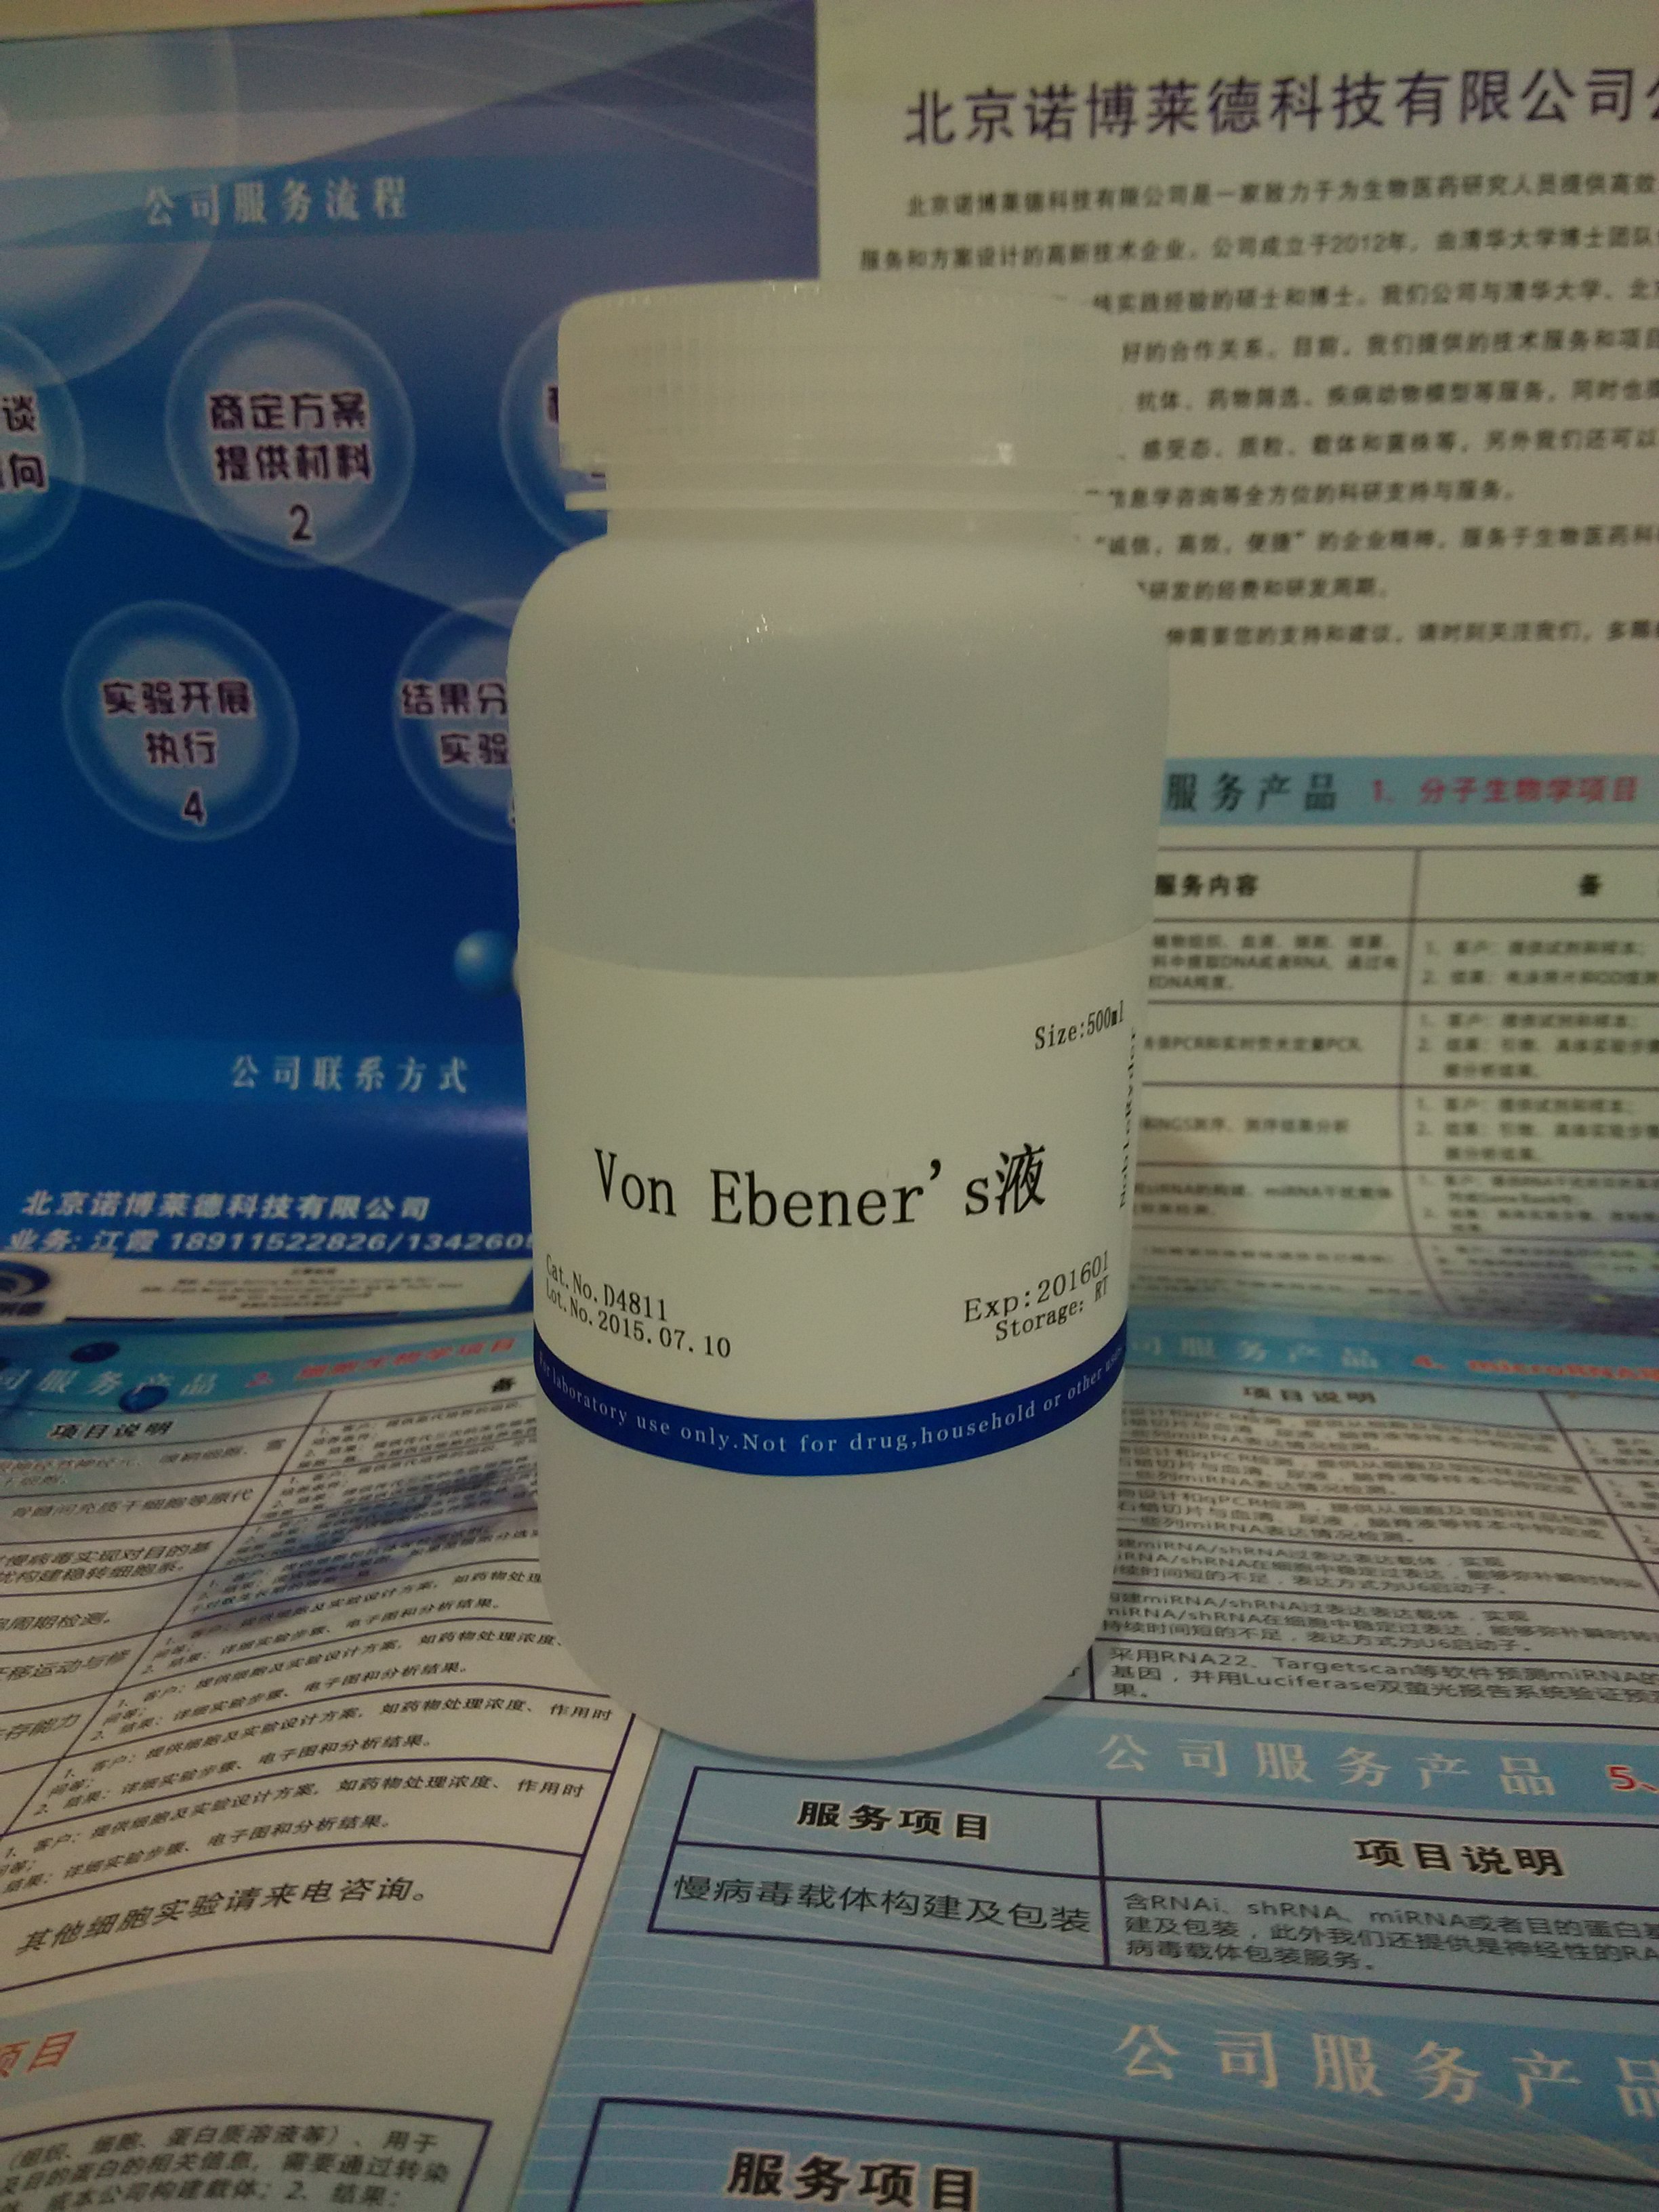 供应Von Ebener's液 NobleRyder D4811 缓冲液 脱钙液 量大更优惠 质量保证 500ml